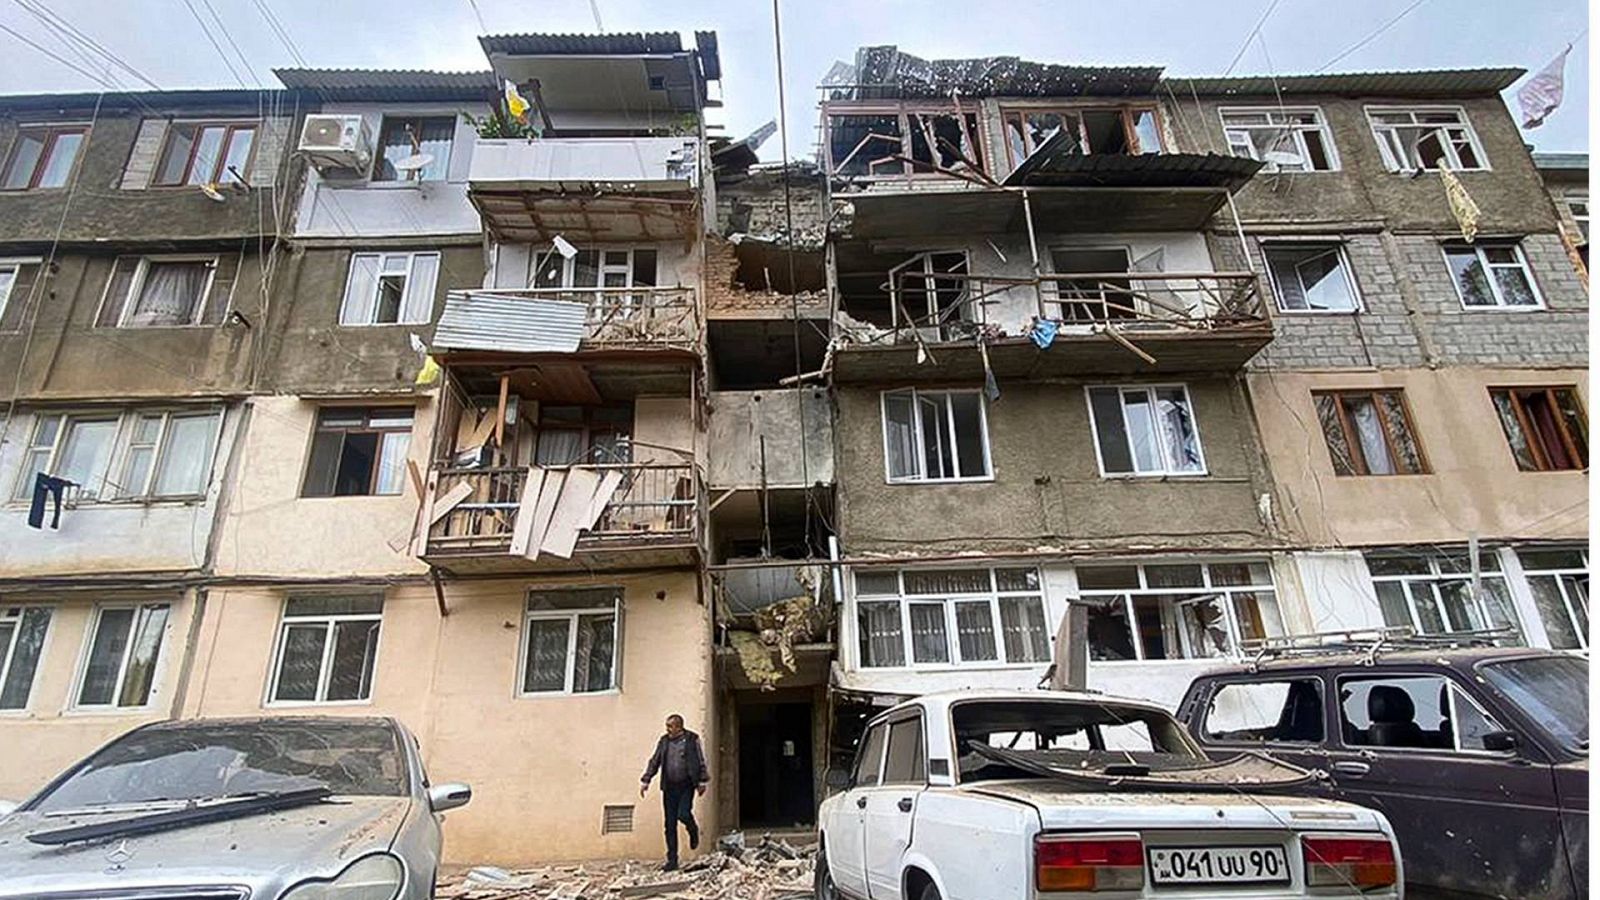 Un bloque de viviendas dañado tras un bombardeo en Stepanakert / Jakendi, capital de la región de Nagorno Karabaj, en Azerbaiyán. Foto: AP Photo/Siranush Sargsyan